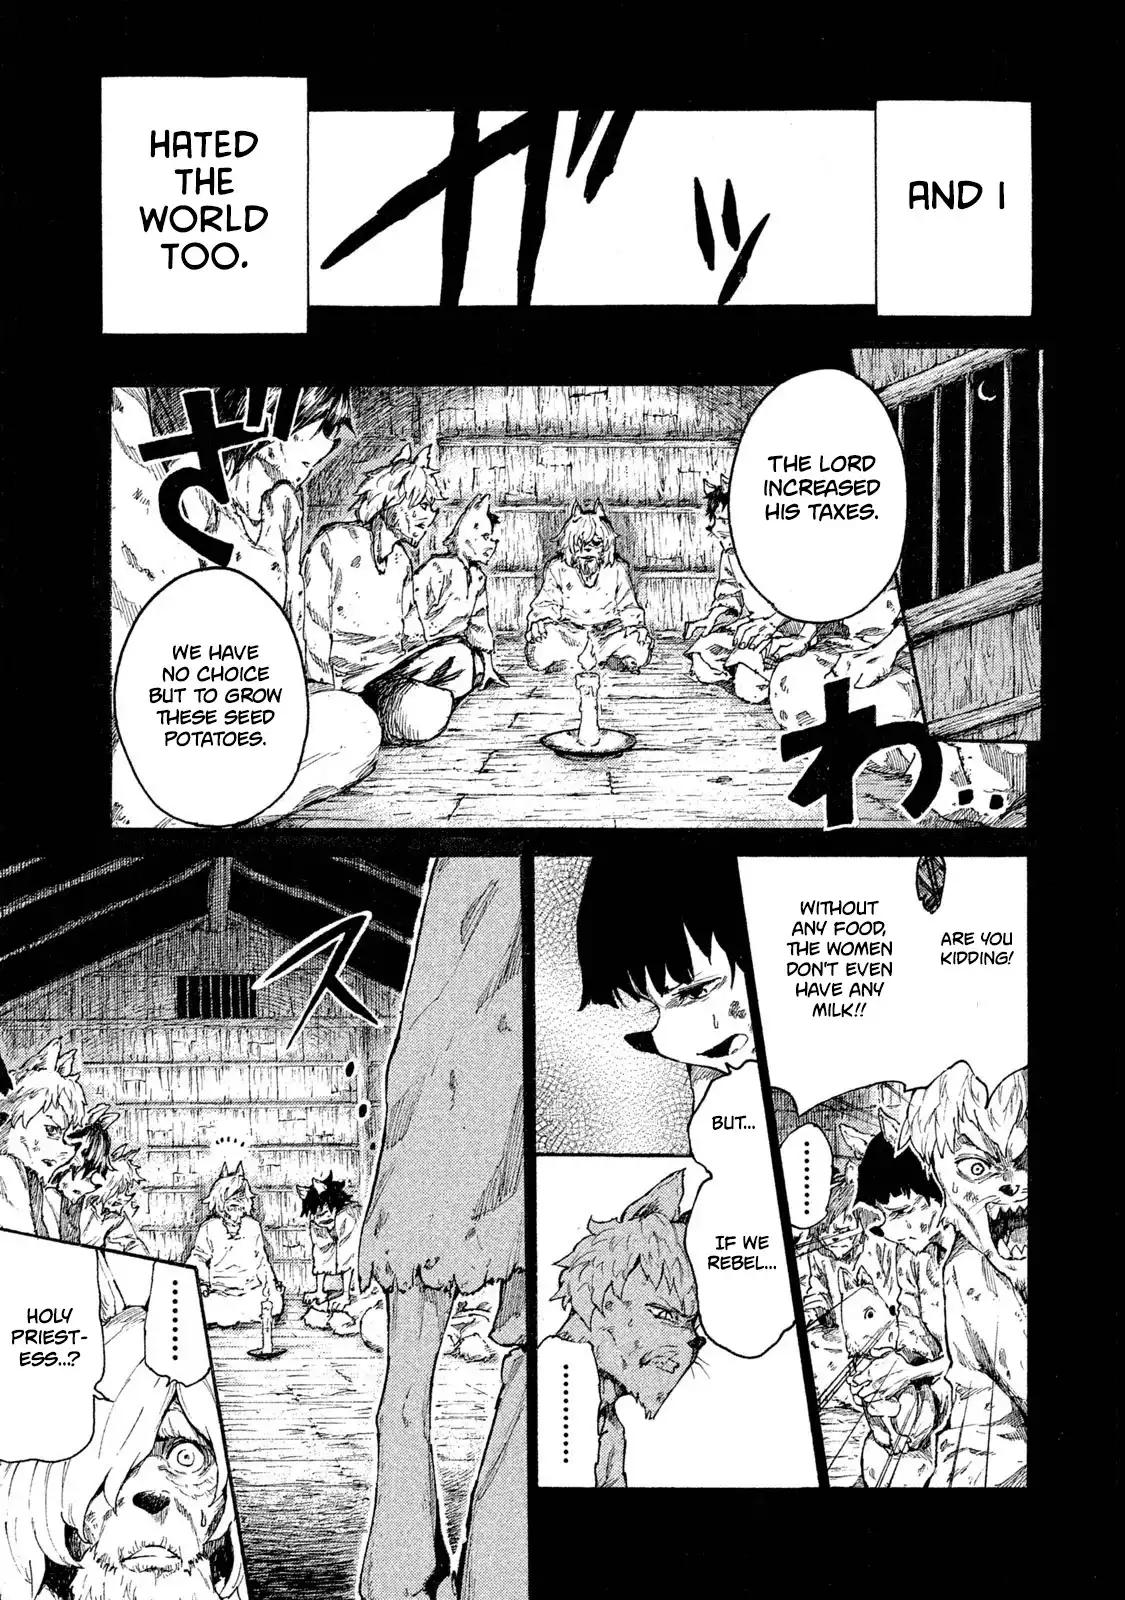 Mazumeshi Elf to Yuboku gurashi Chapter 8